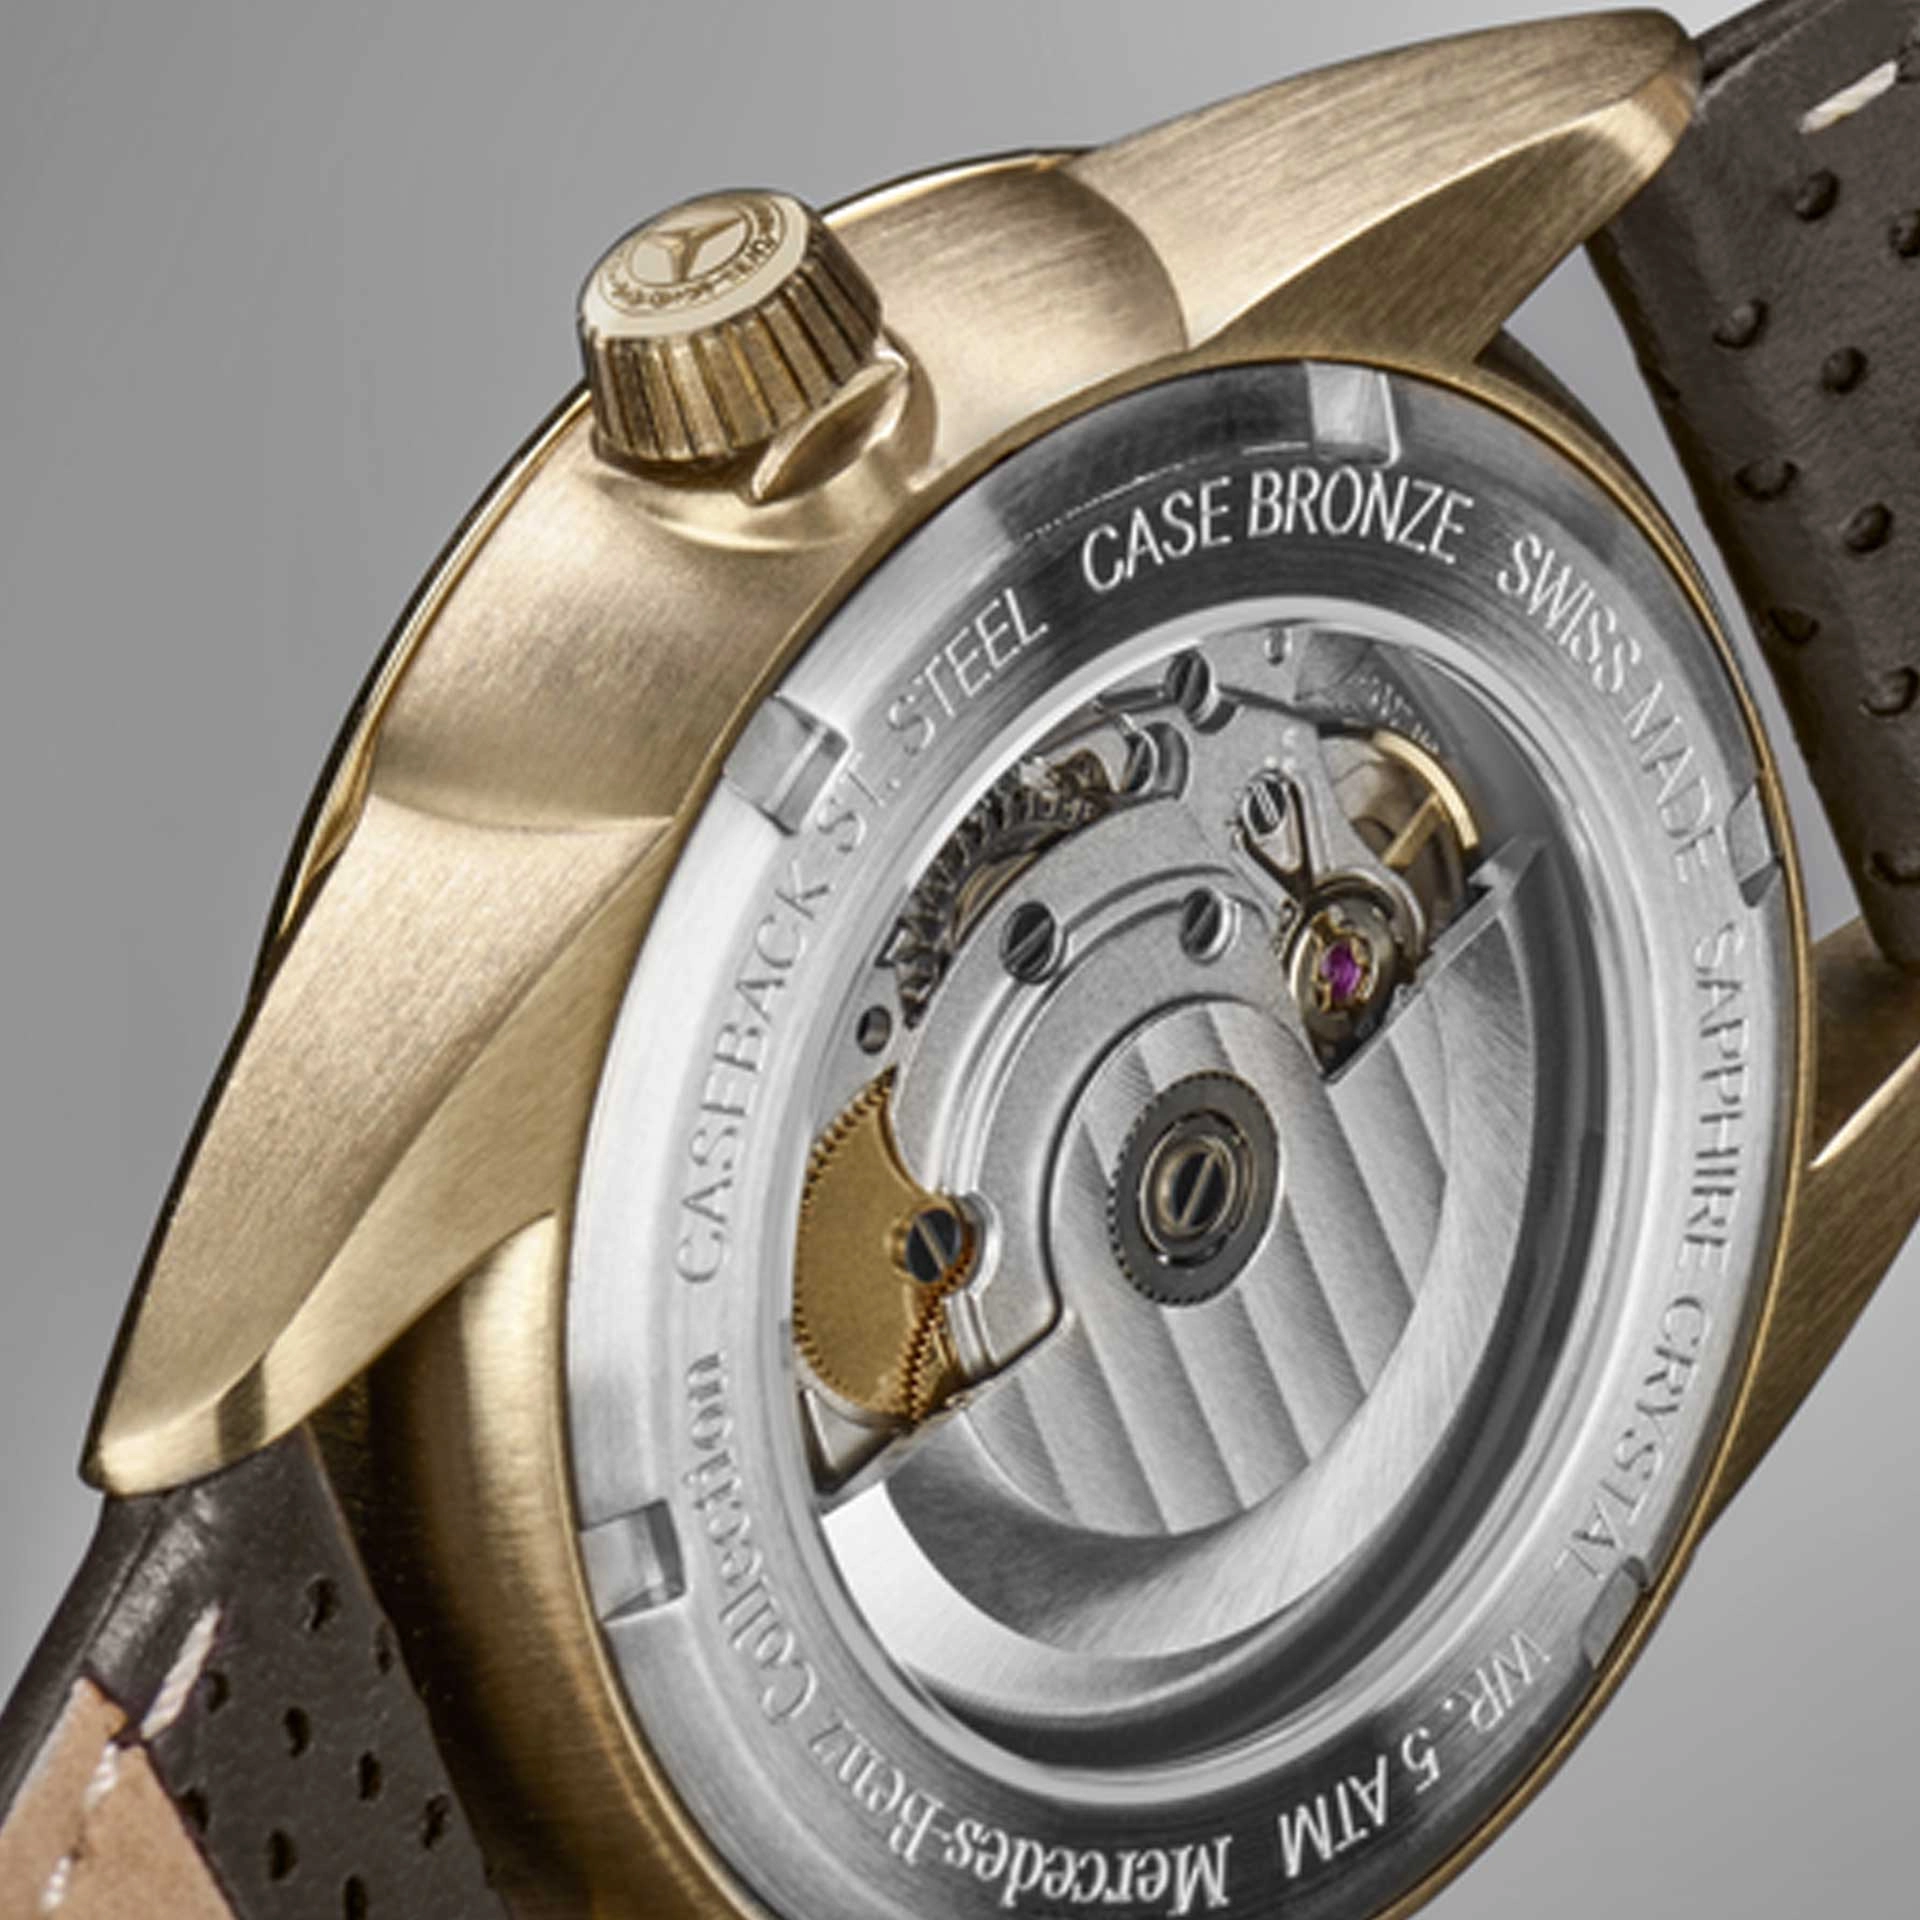 Armbanduhr für Herren Original Mercedes-Benz